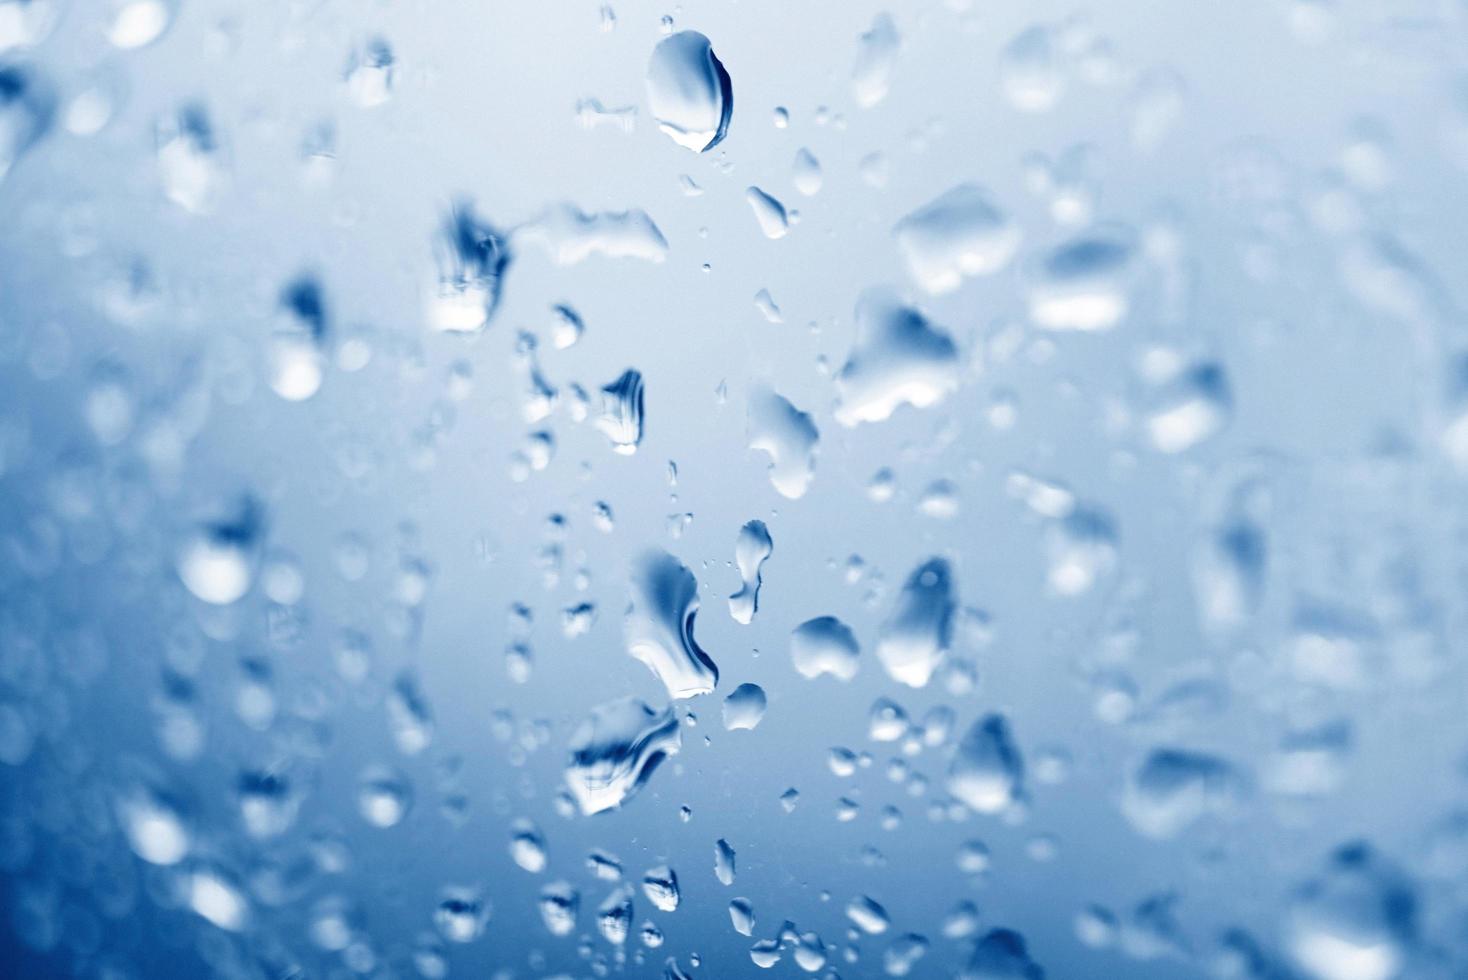 fundo de vidro de gota de água, natureza azul com gota de água após a chuva, gotas de chuva na janela de vidro na estação chuvosa foto